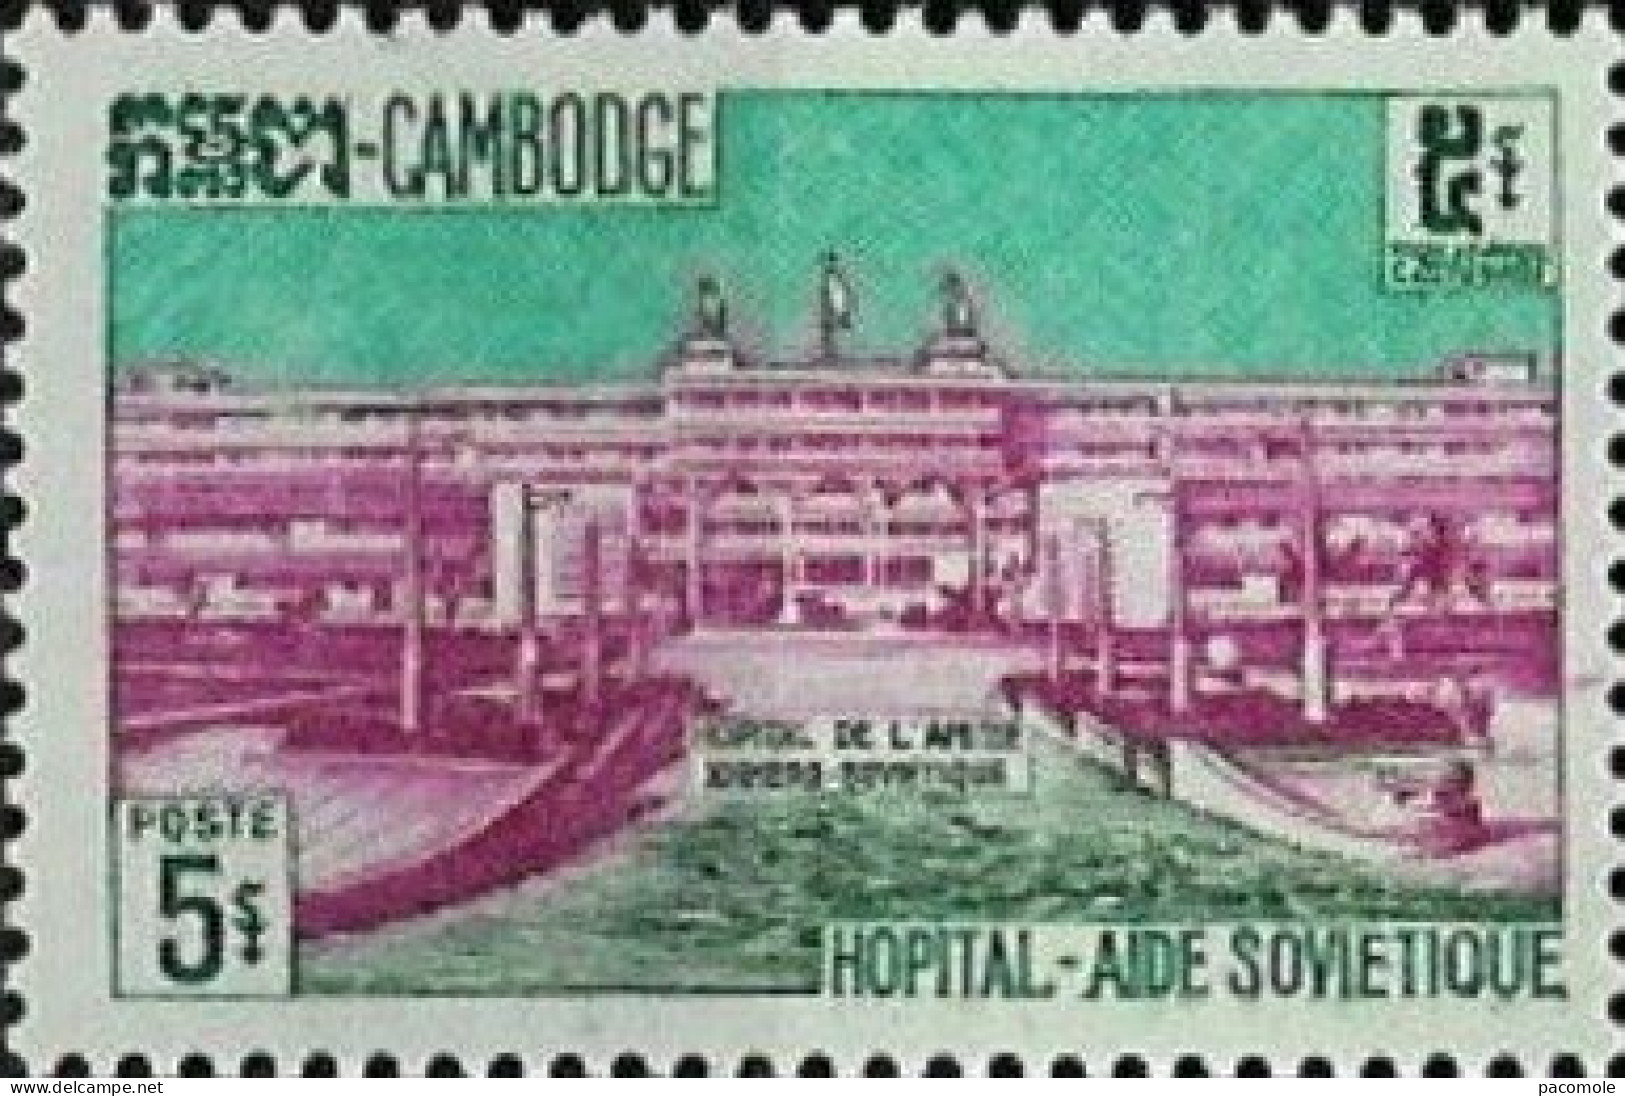 Cambodge - 1961 - Développement économique - Cambodia